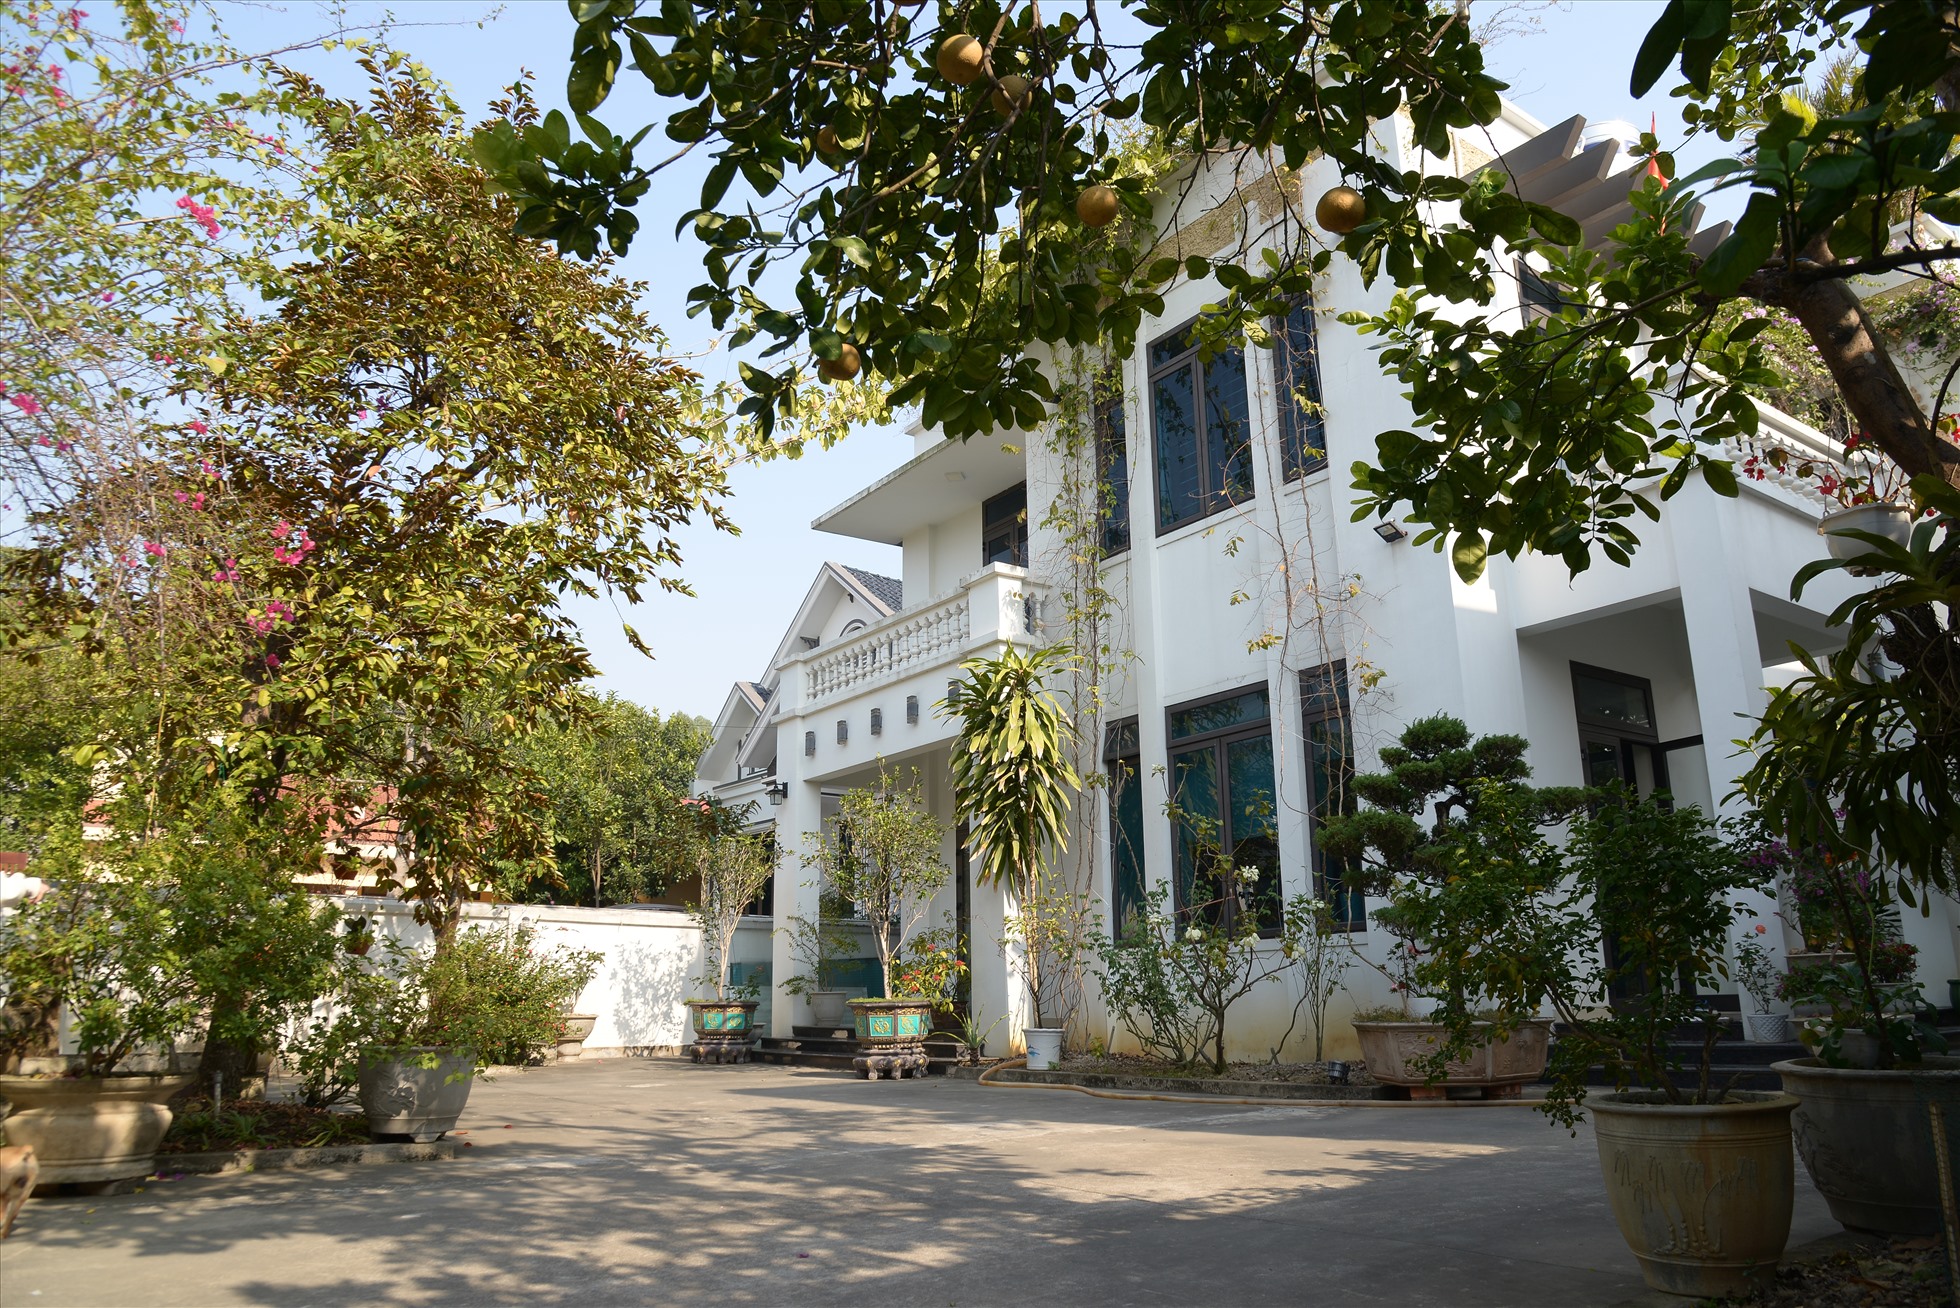 Quan Họ Villa ở Quả Cảm, Hòa Long, Bắc Ninh đang là một địa điểm được nhiều người lựa chọn bởi sự sạch sẽ, tiện nghi và nhiệt tình của gia chủ.